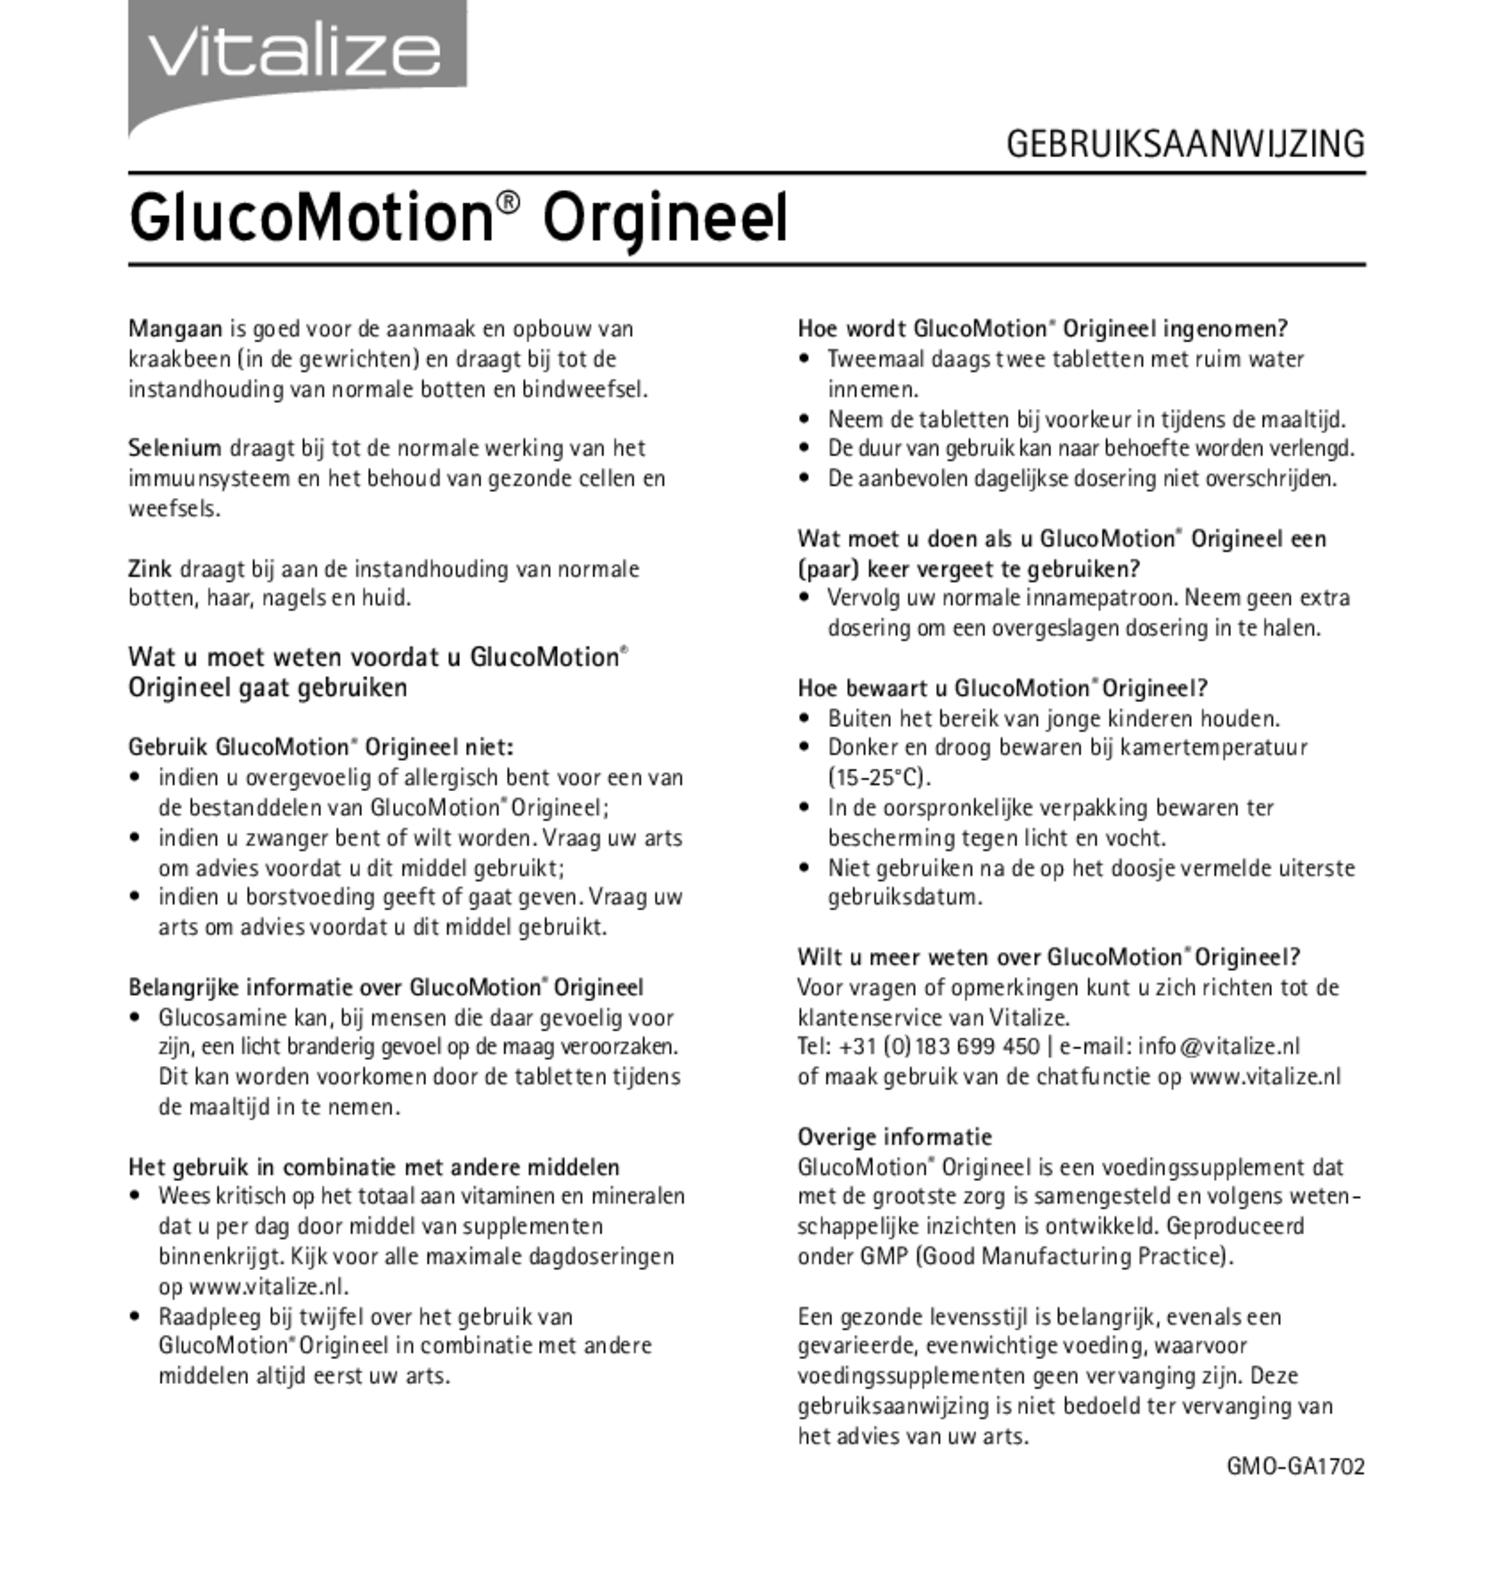 GlucoMotion Origineel Tabletten afbeelding van document #2, gebruiksaanwijzing